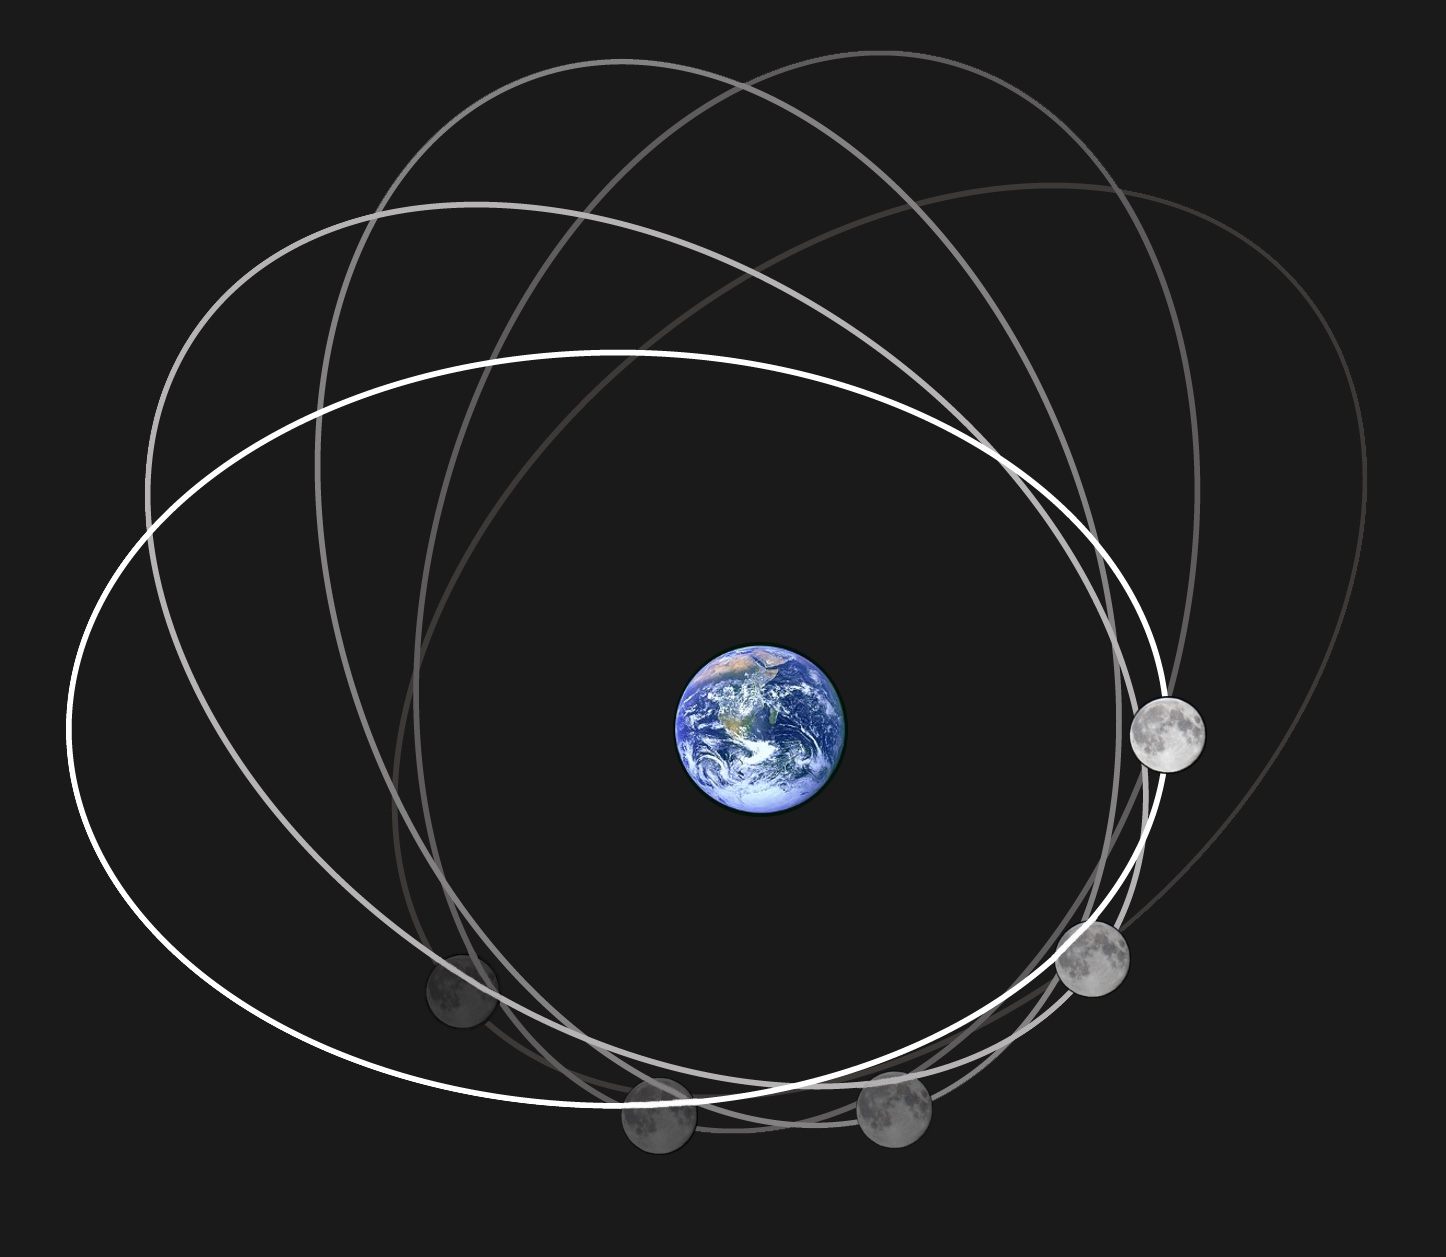 Ilustración de la órbita elíptica de la Luna alrededor de la Tierra